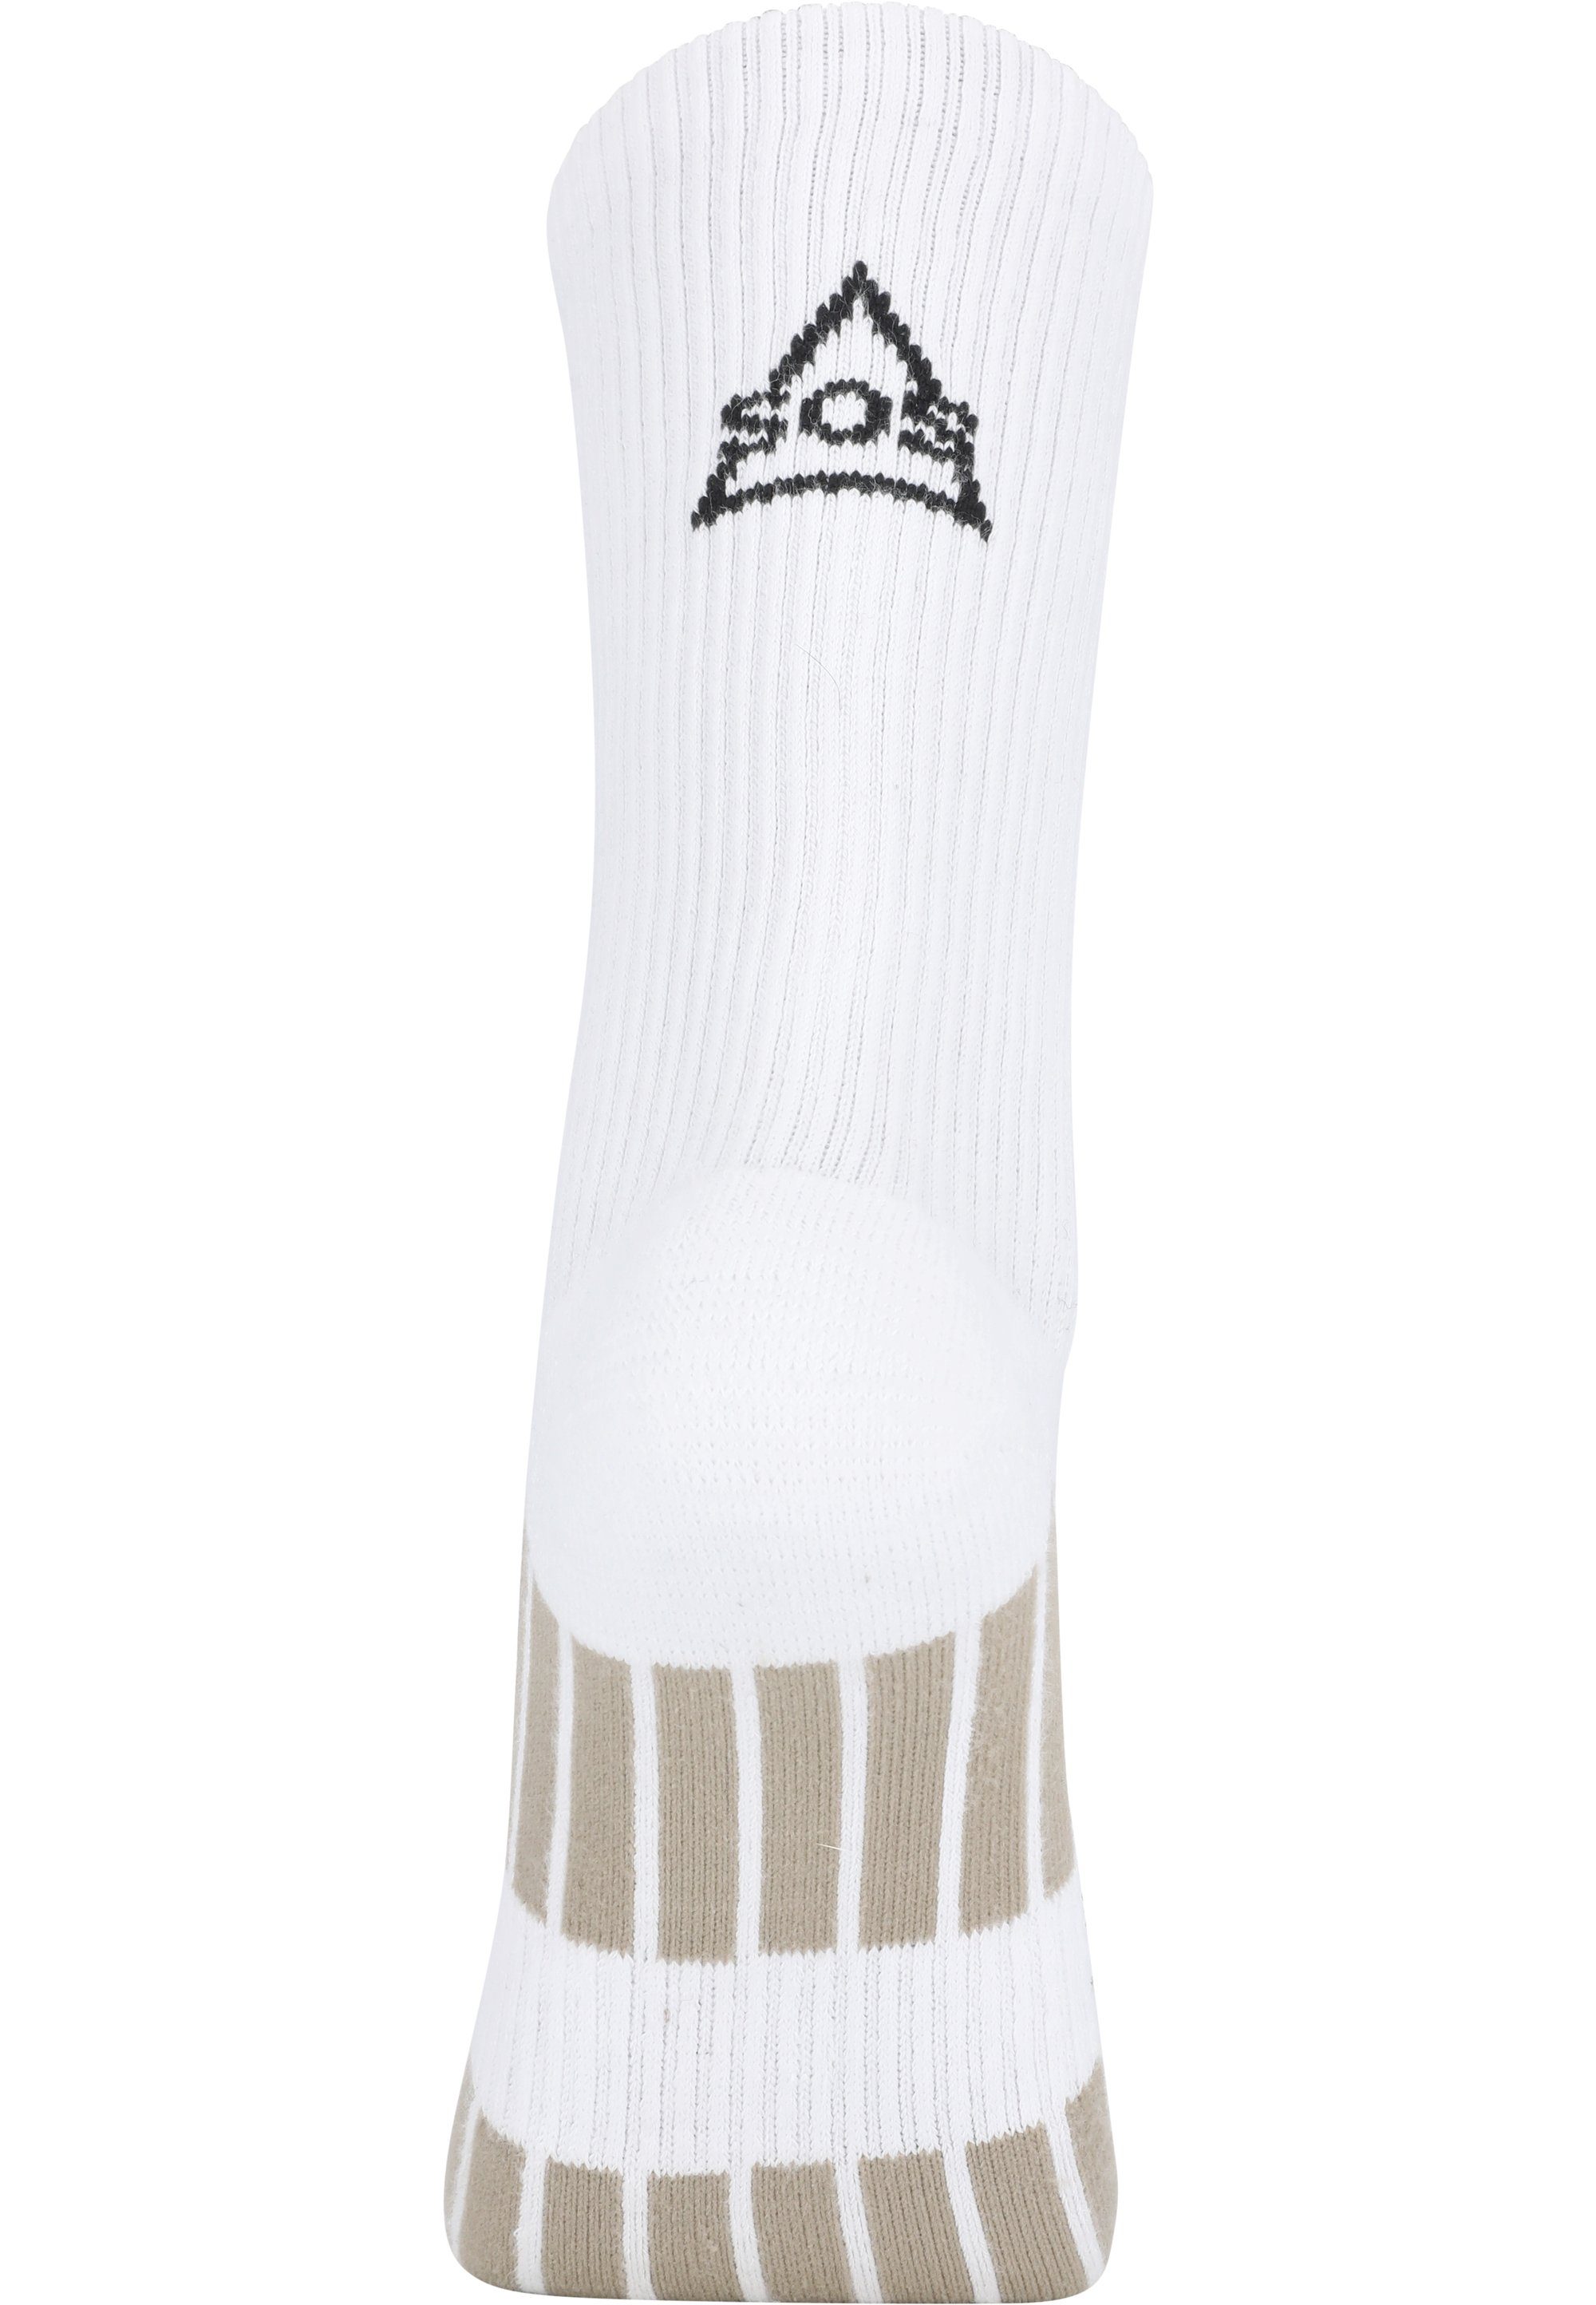 SOS Socken Levi aus weichem Material weiß